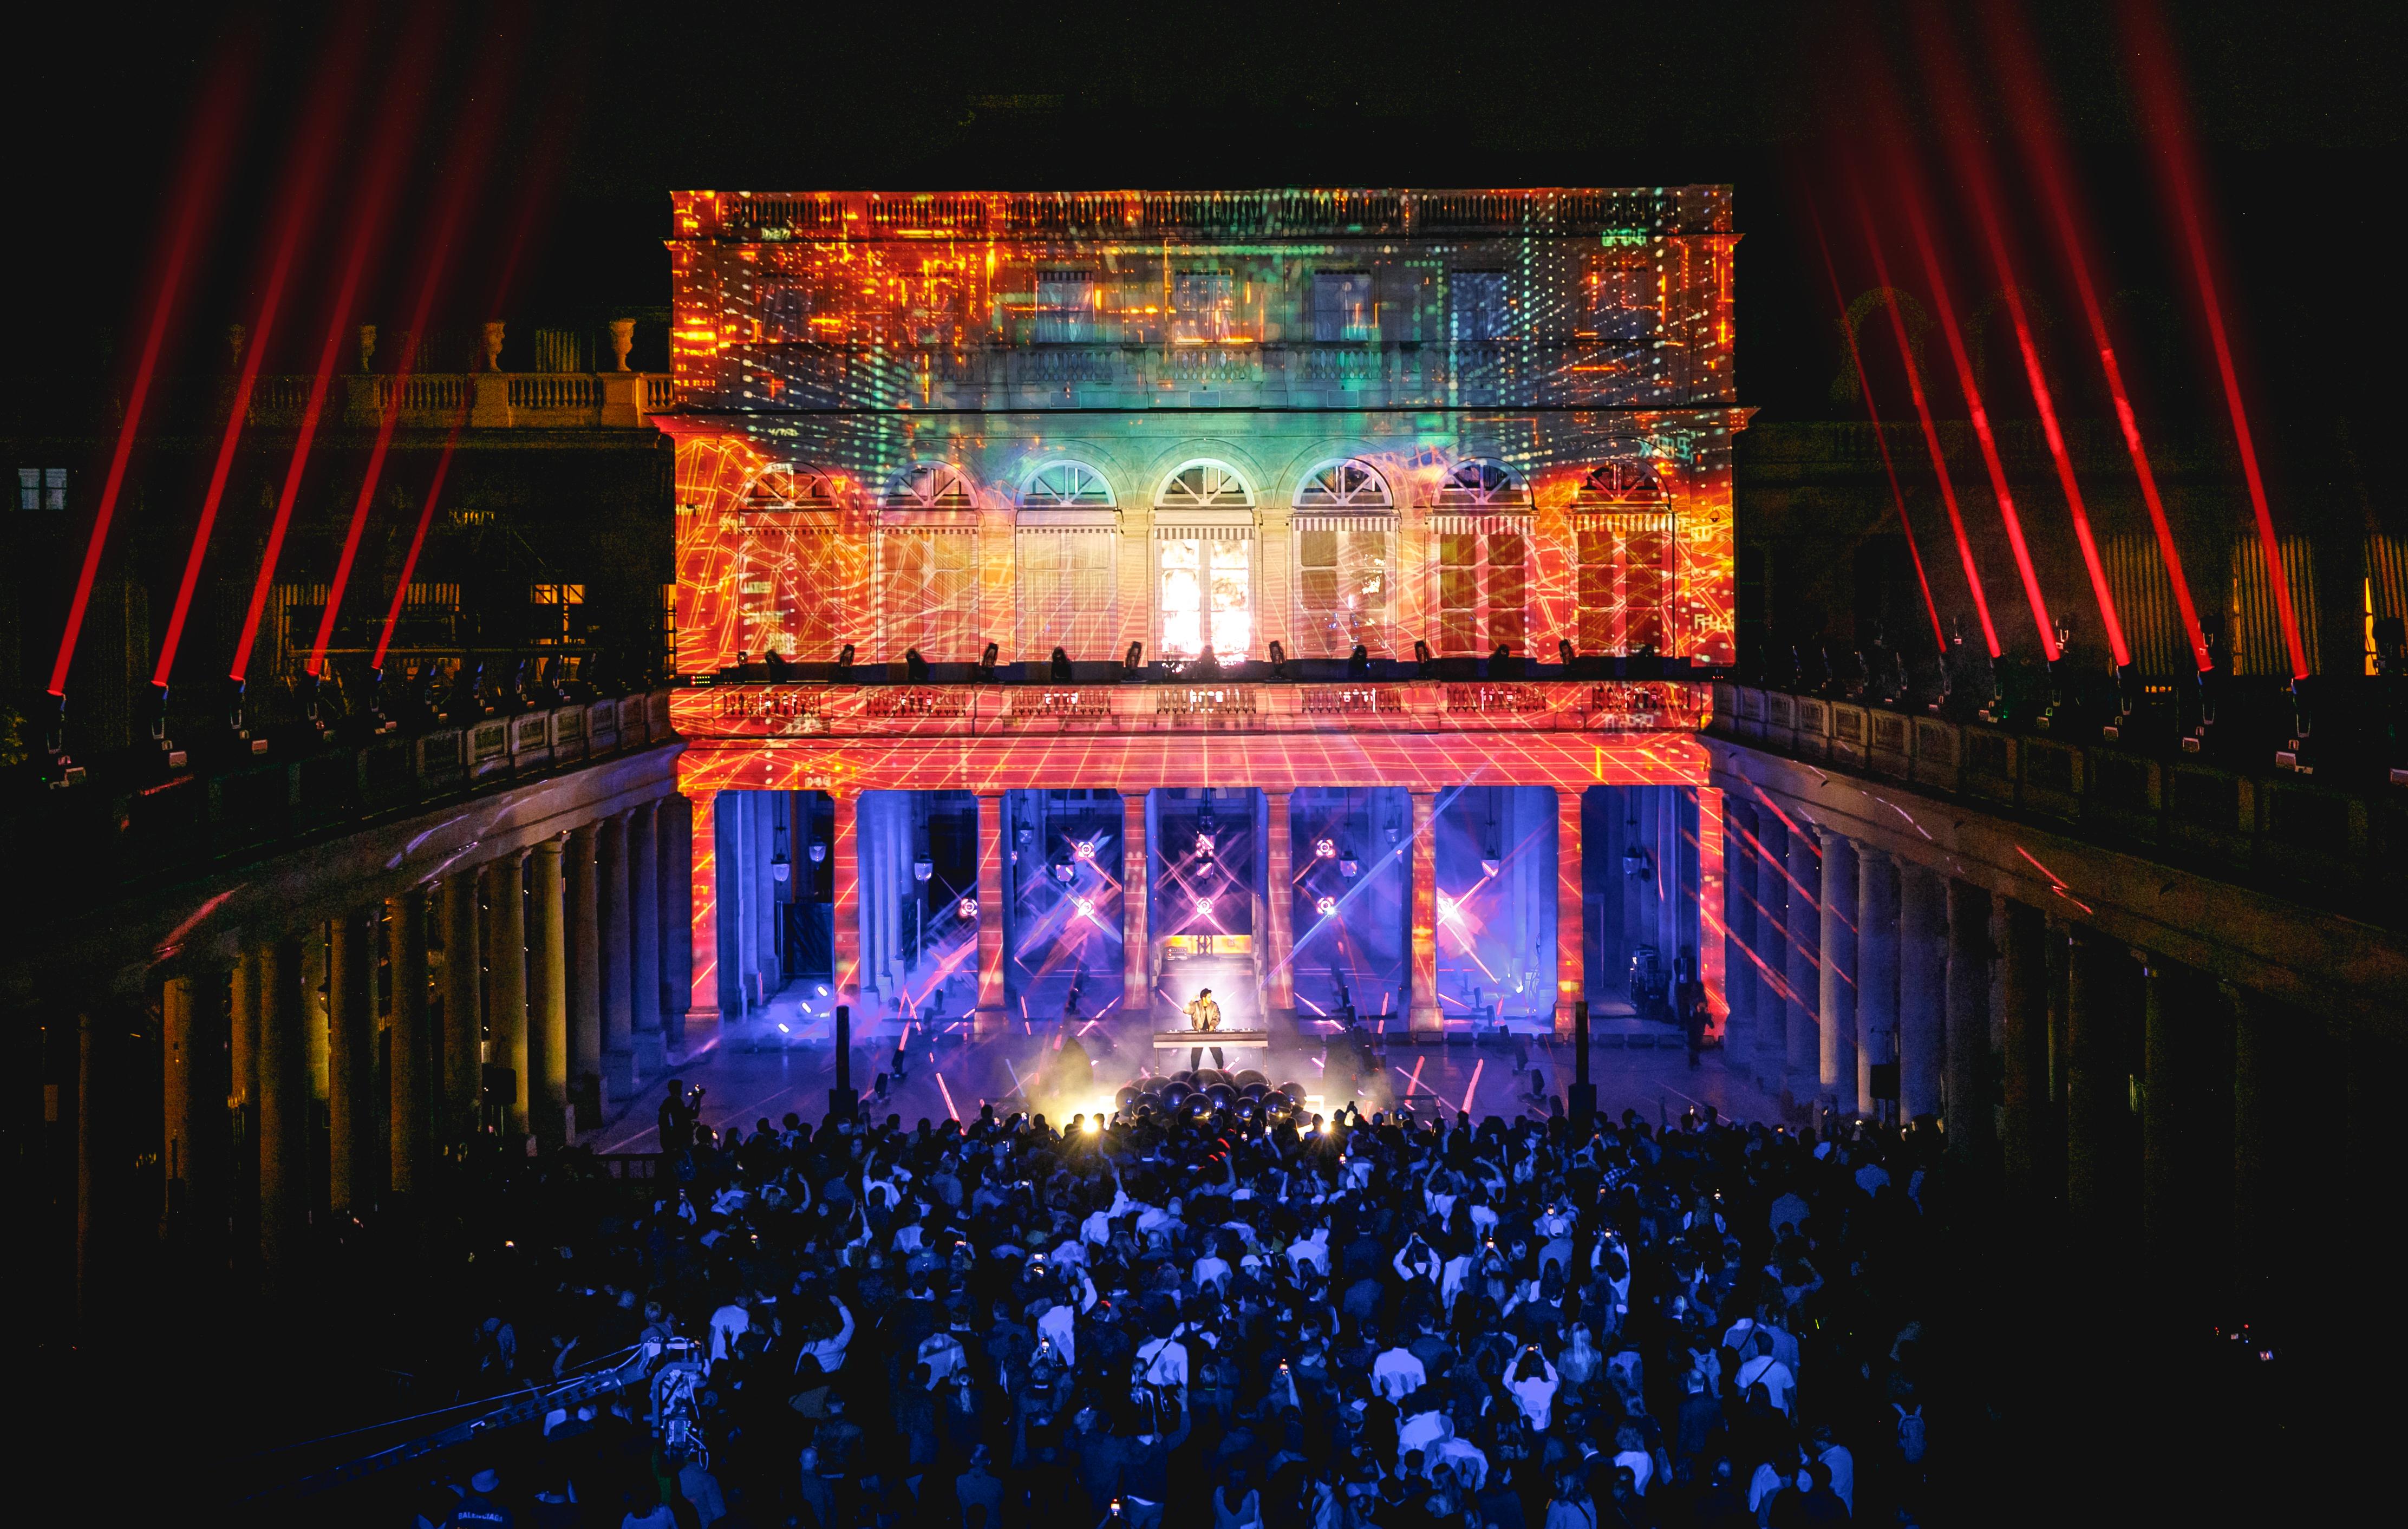 En plein spectacle, la foule dans la pénombre au premier plan, le DJ sous les projecteur, et les façades environnantes éclairées par de nombreux lasers de toutes les couleurs.